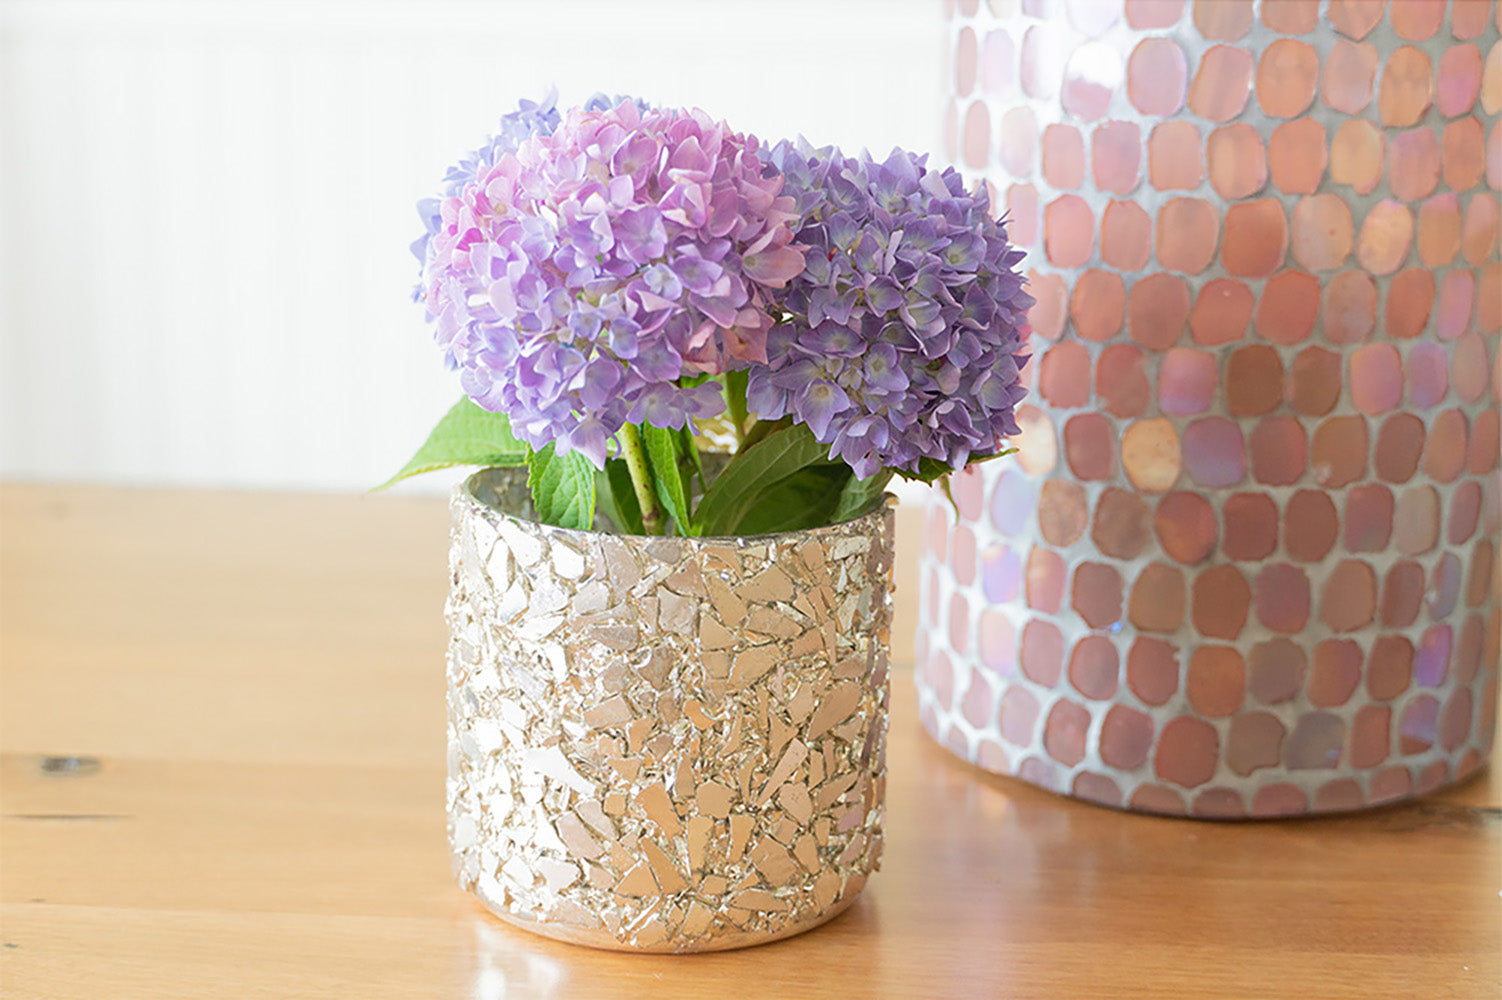 Silver Crushed Mosaic Votive + Vase